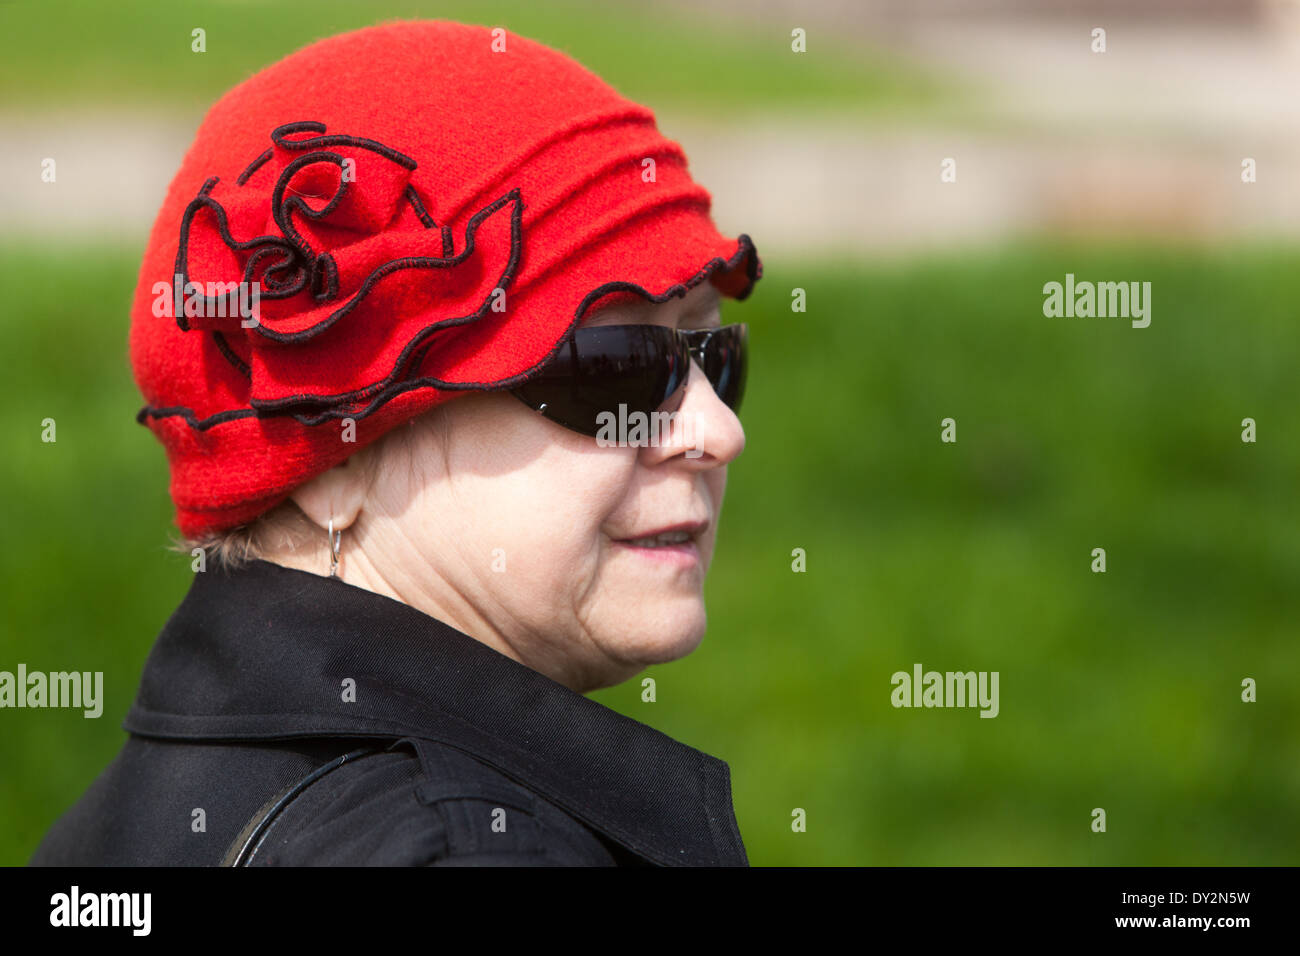 Femme plus âgée dans un red hat Prague, République Tchèque Banque D'Images